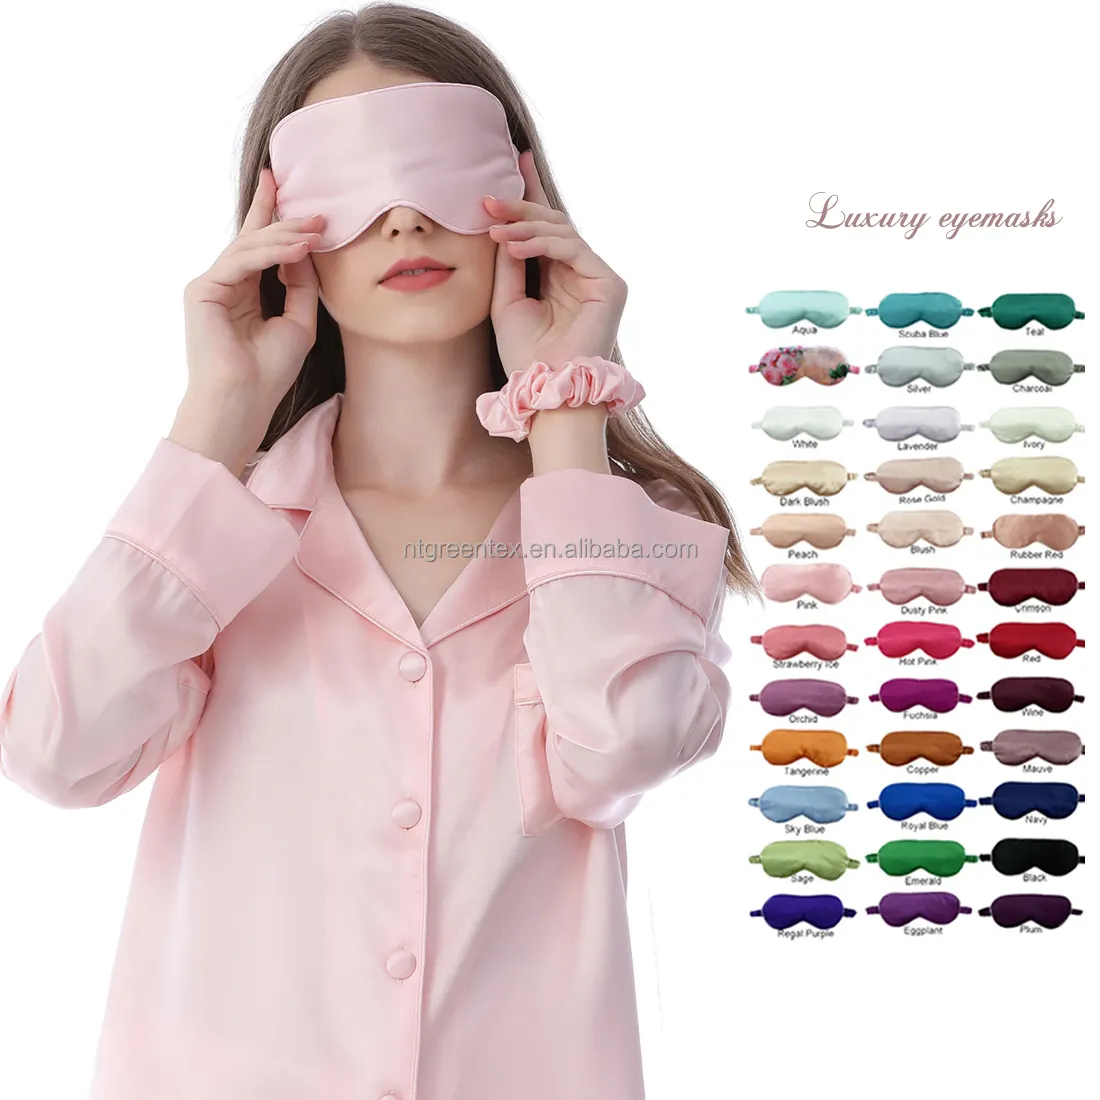 Individuelle Seiden-Augenmaske OEM-LOGO-Design elastisches Band Damen Satin Schlafende Schöne SPA Augenmaske Schatten